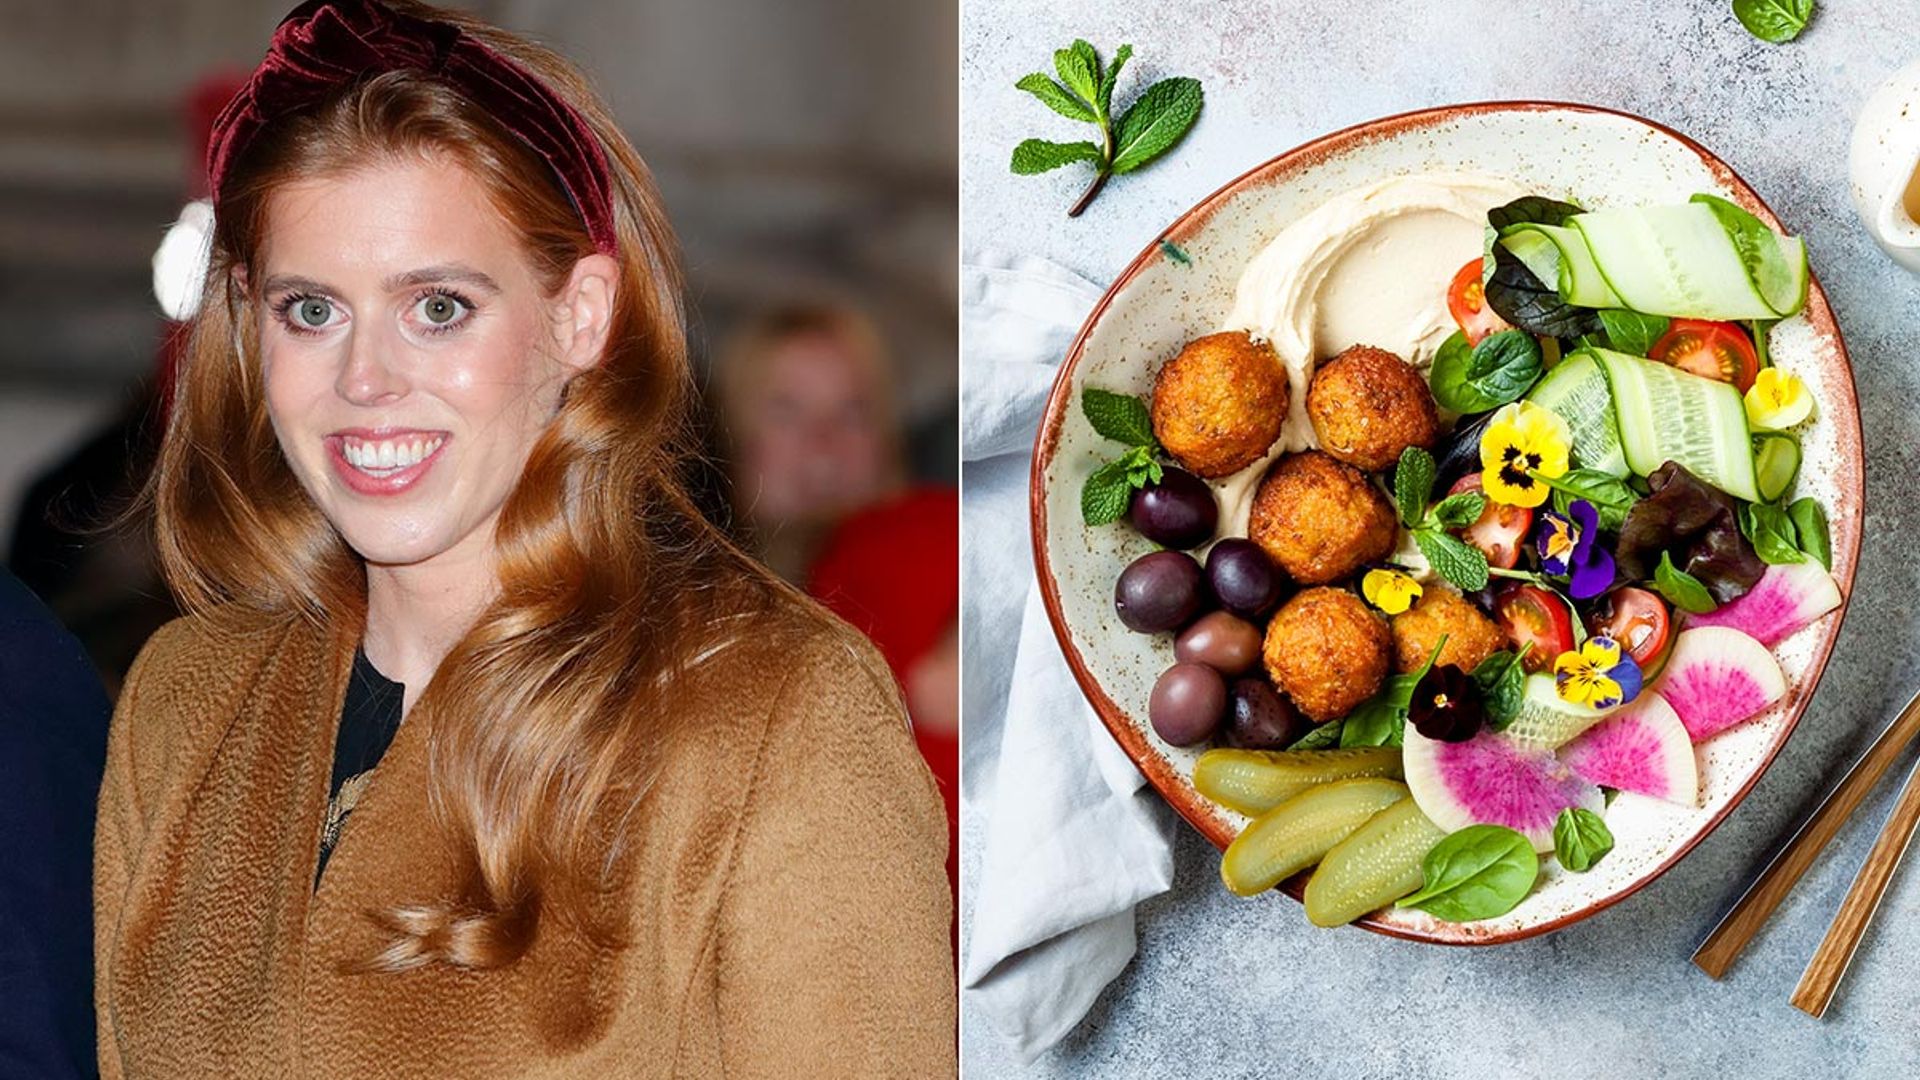 Princess Beatrice's pre-wedding vegan diet might surprise royal fans